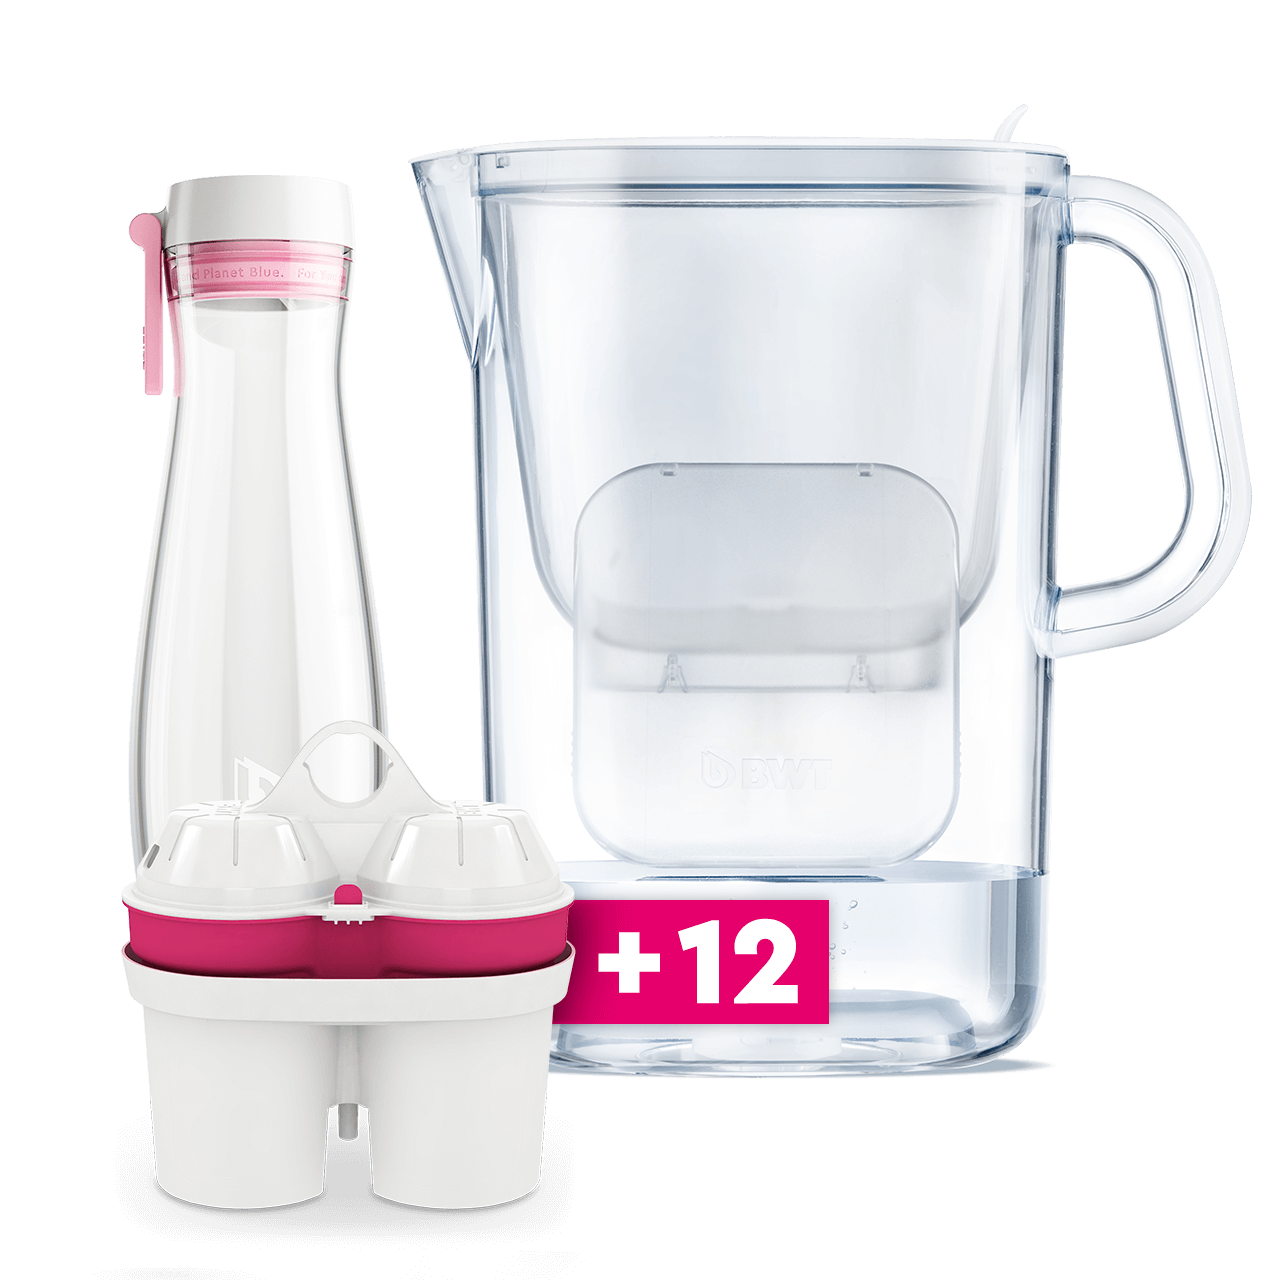 AQUAlizer filtro de agua de mesa con cartuchos filtrantes de magnesio incl. jarra de vidrio